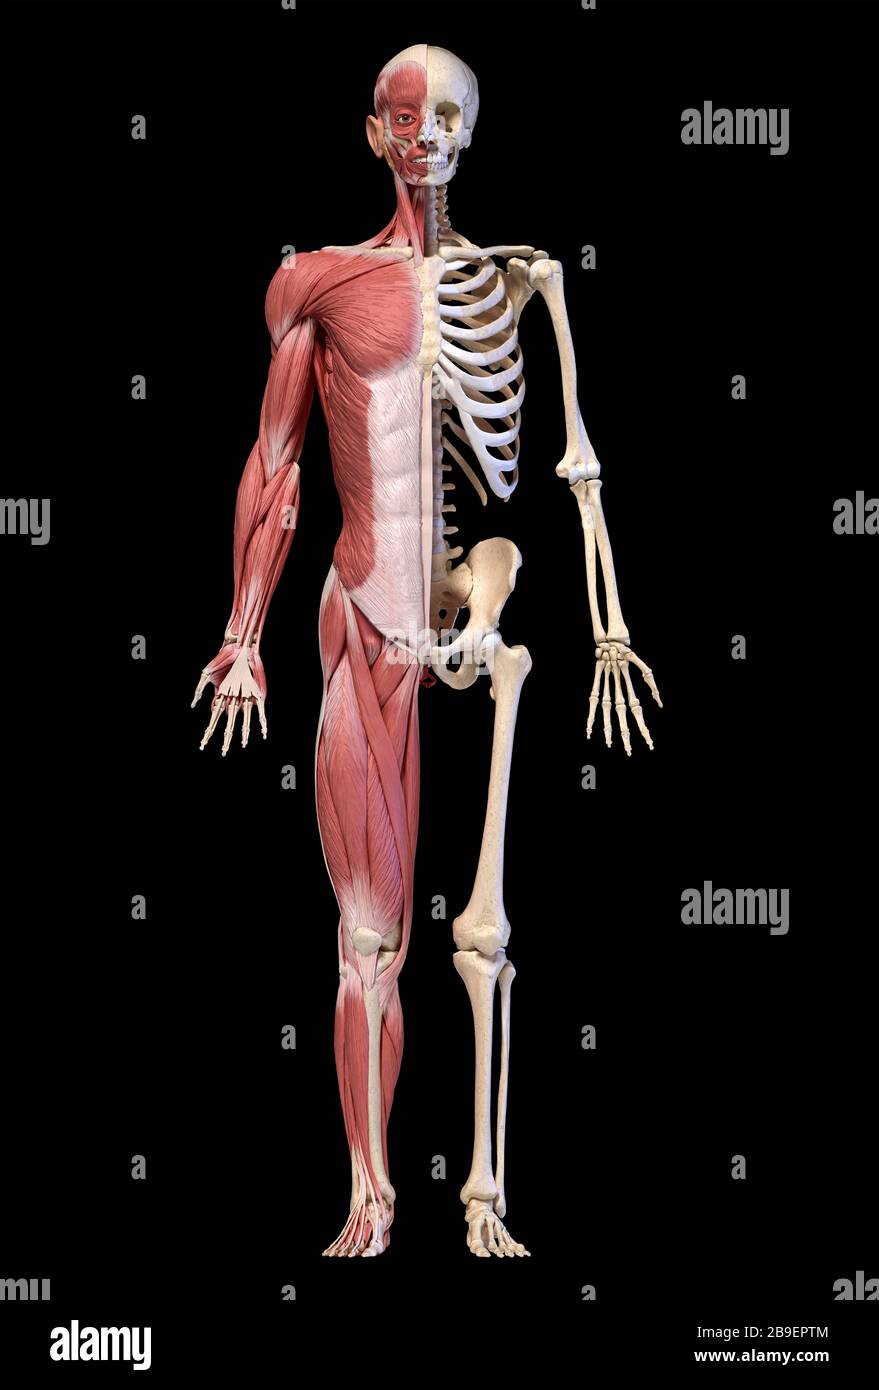 Anatomie der menschlichen männlichen Muskel- und Skelettsysteme, Vorderansicht, schwarzer Hintergrund. Stockfoto